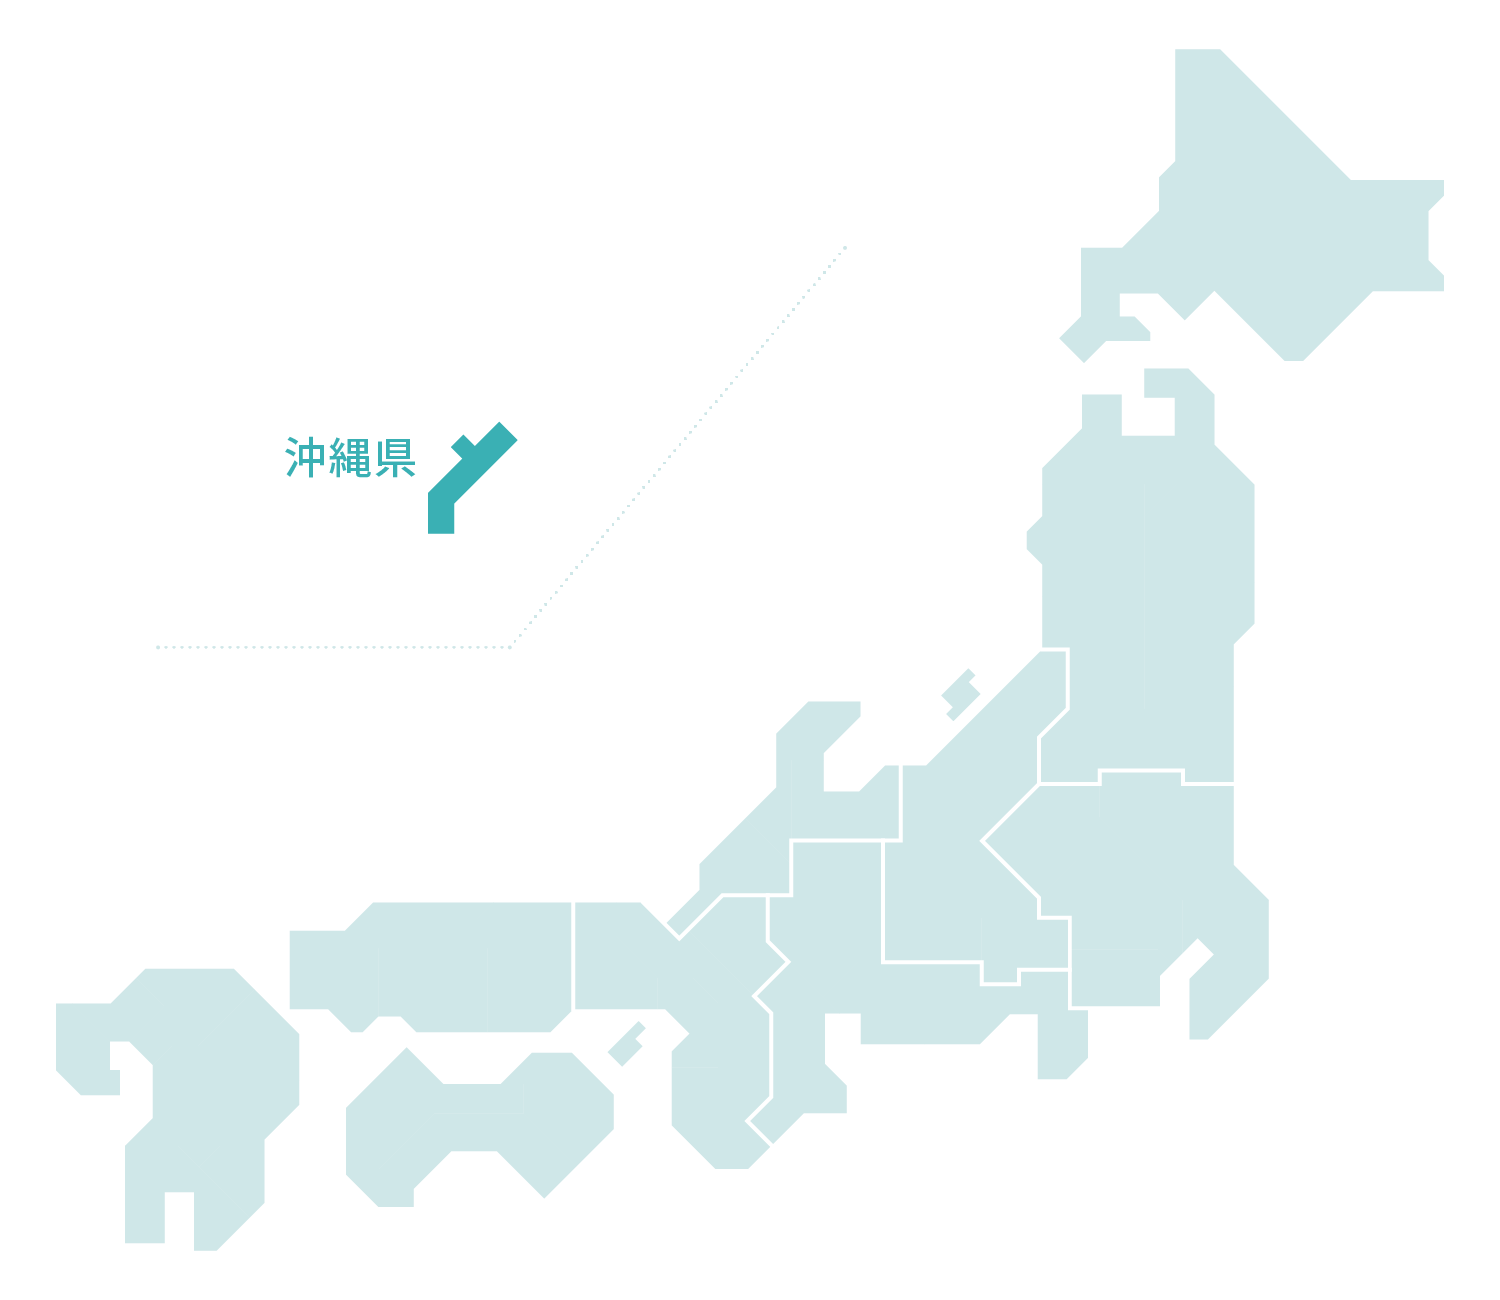 沖縄MAP